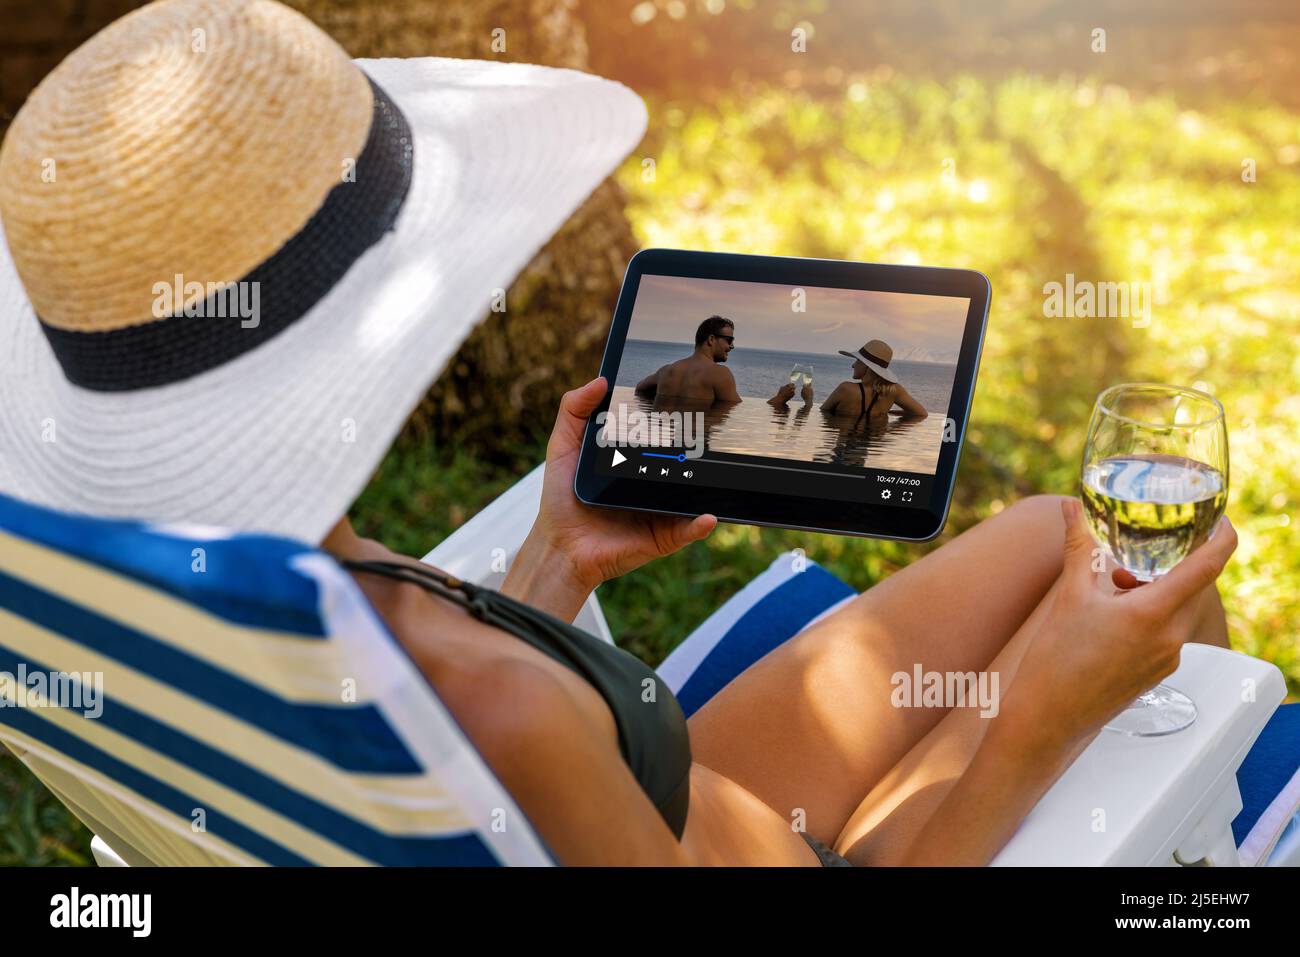 Frau, die einen romantischen Film über den Streaming-Media-Service ansieht, während sie sich im Gartenstuhl entspannt Stockfoto